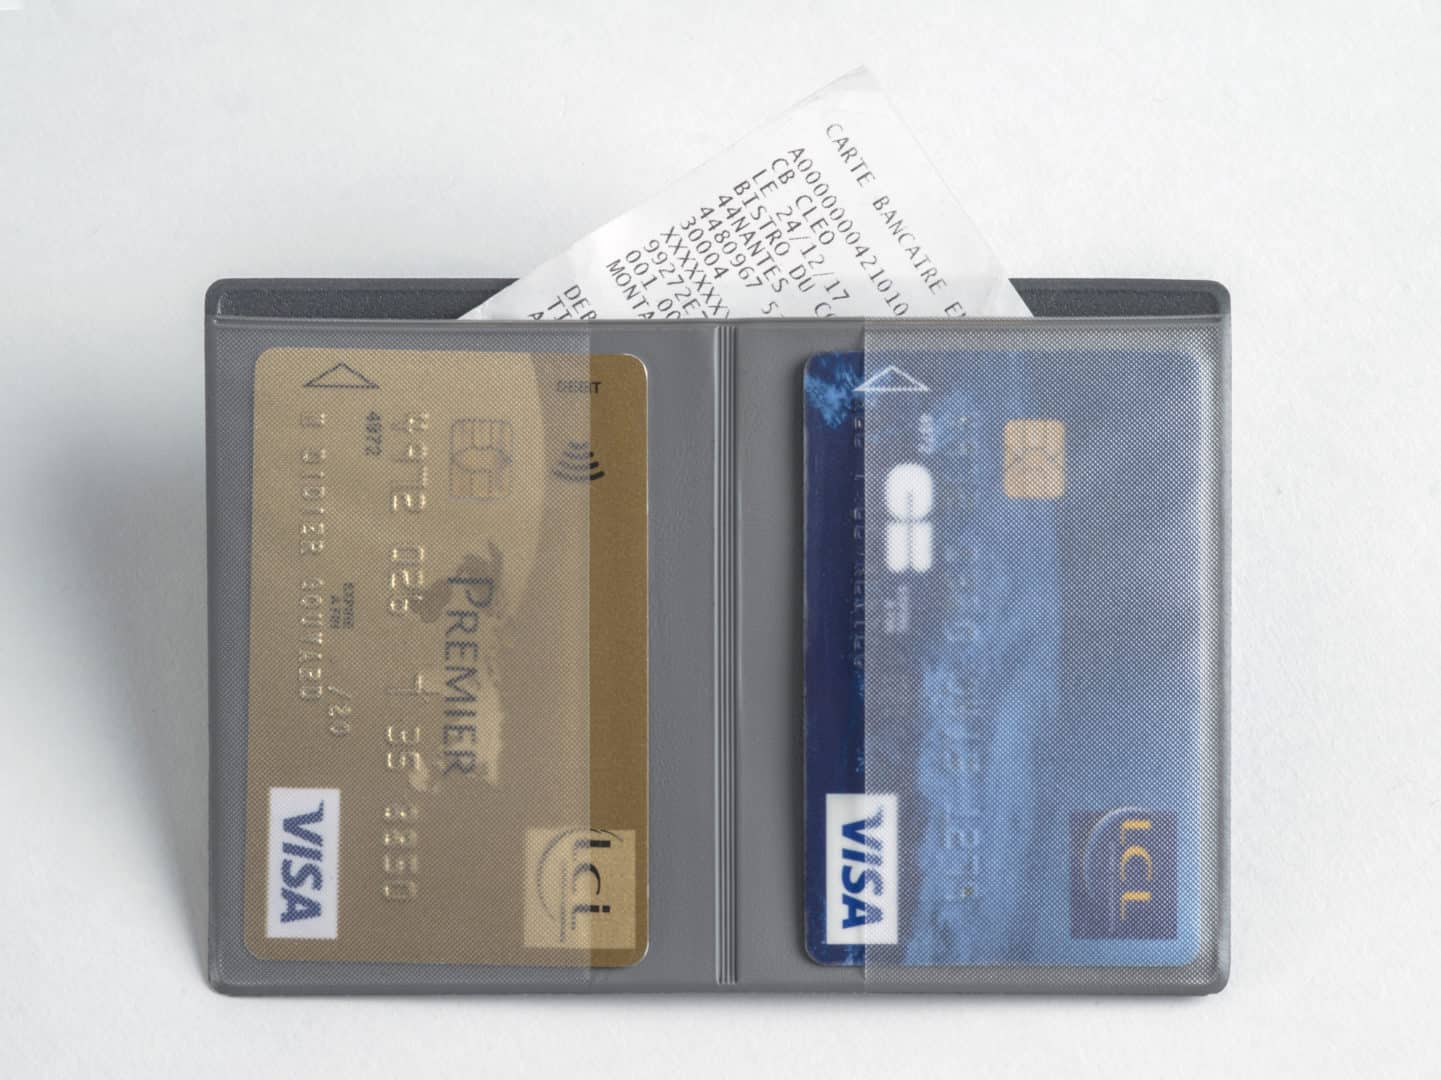 Porte-cartes bancaires cousu avec pochette pour facturettes